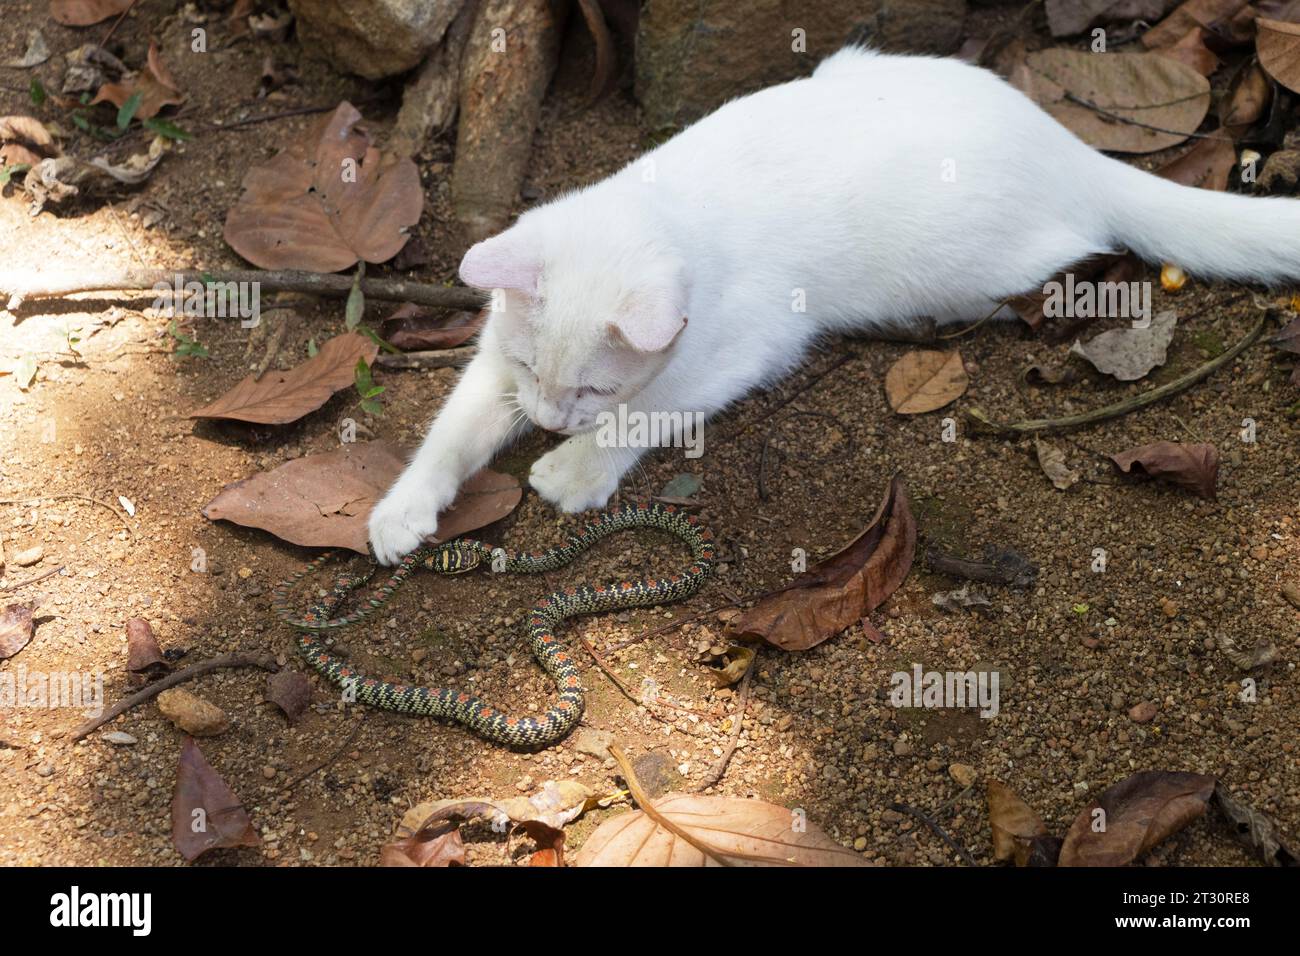 Katze mit einer Schlange, die sie gefangen hat. Weiße Katze, die in der Nähe liegt, ist Beute, eine Schlange. Katze im Freien, die eine Schlange in der Nähe ansieht. Stockfoto